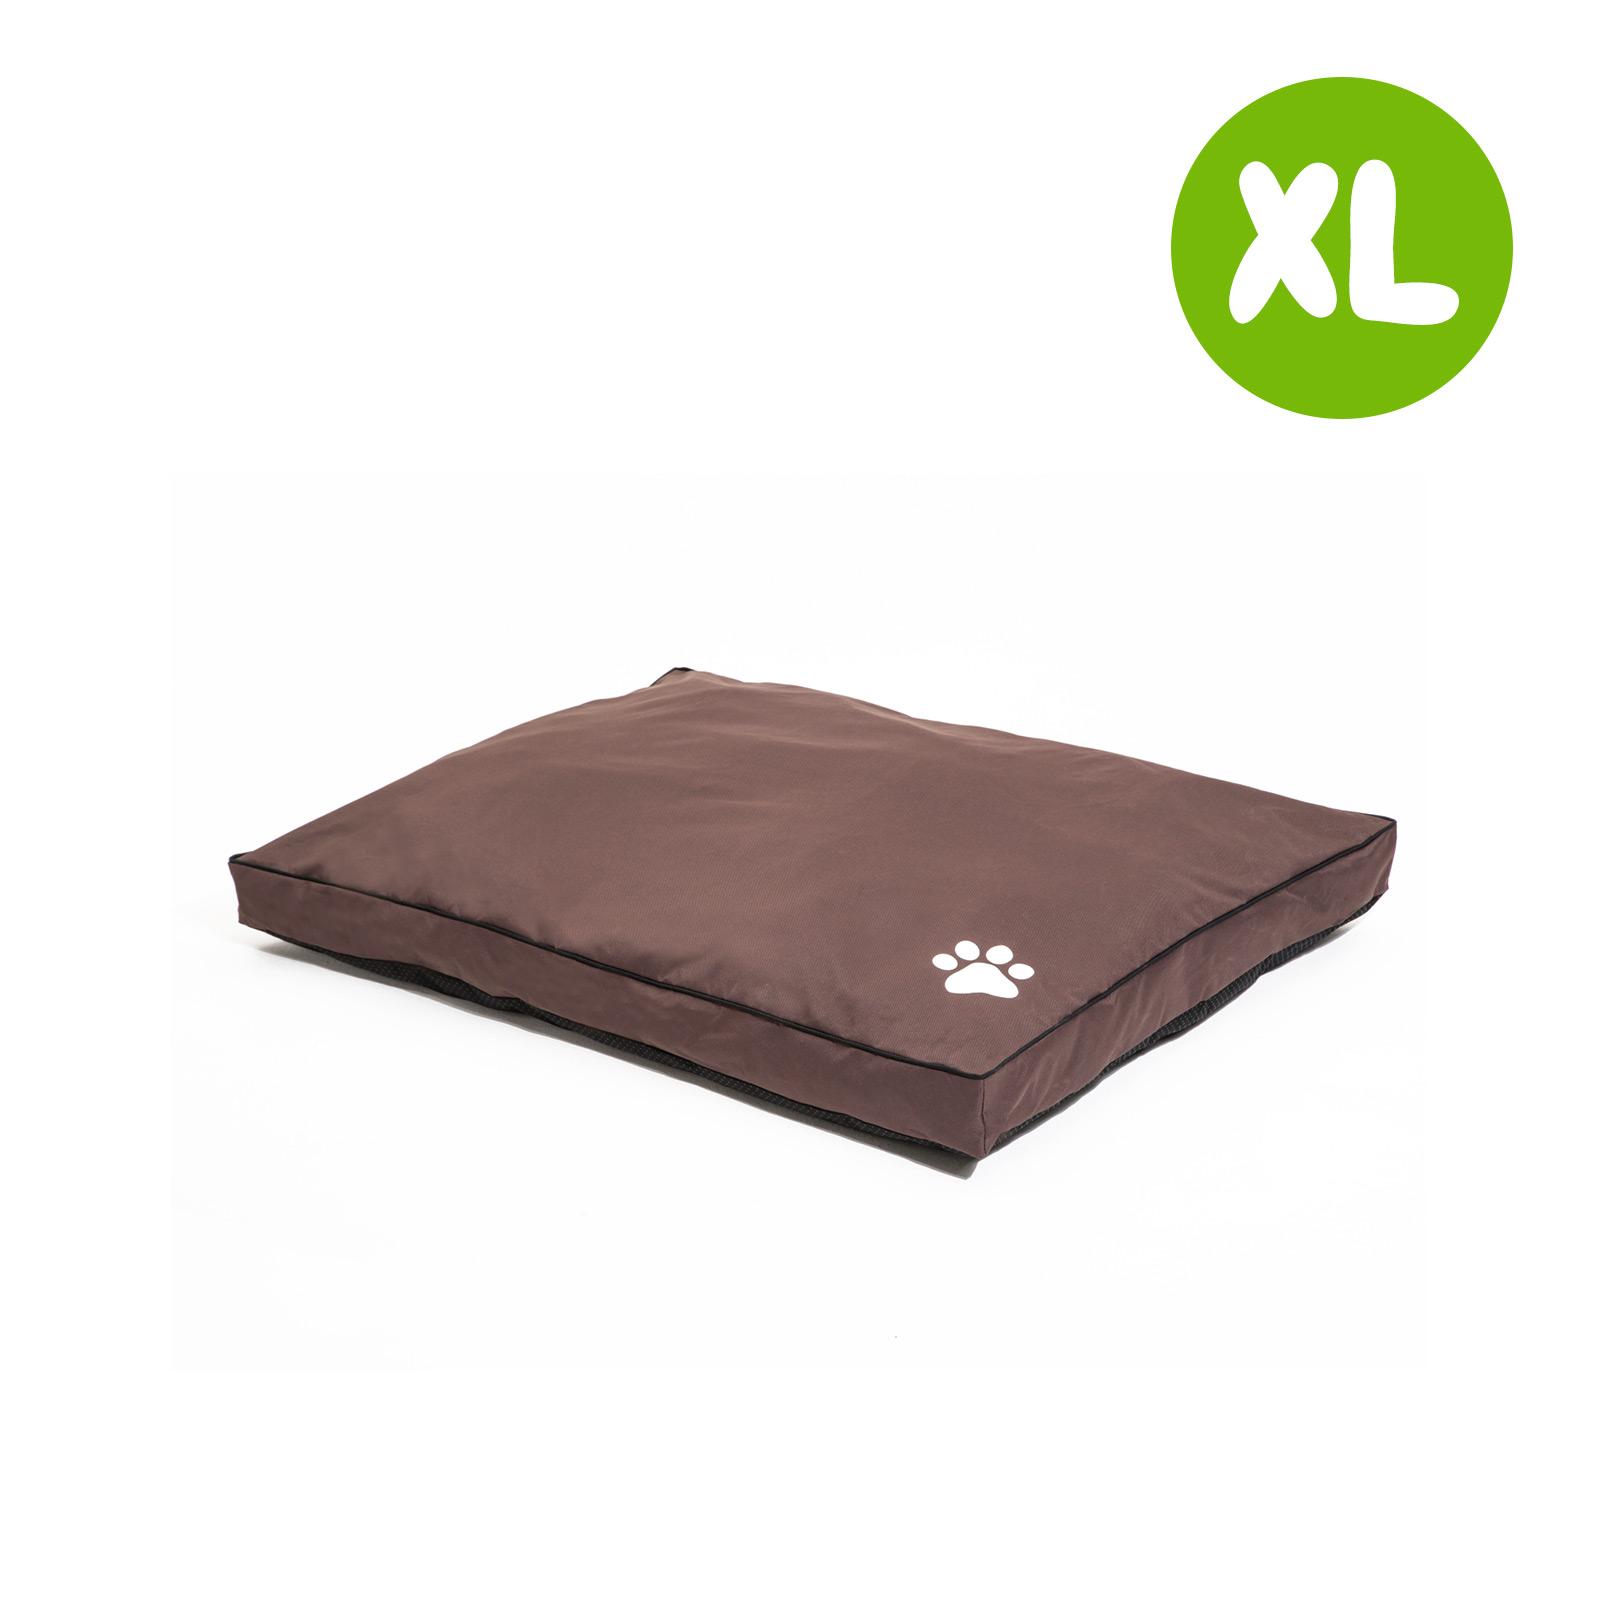 XL Pet Bed Mattress - BROWN